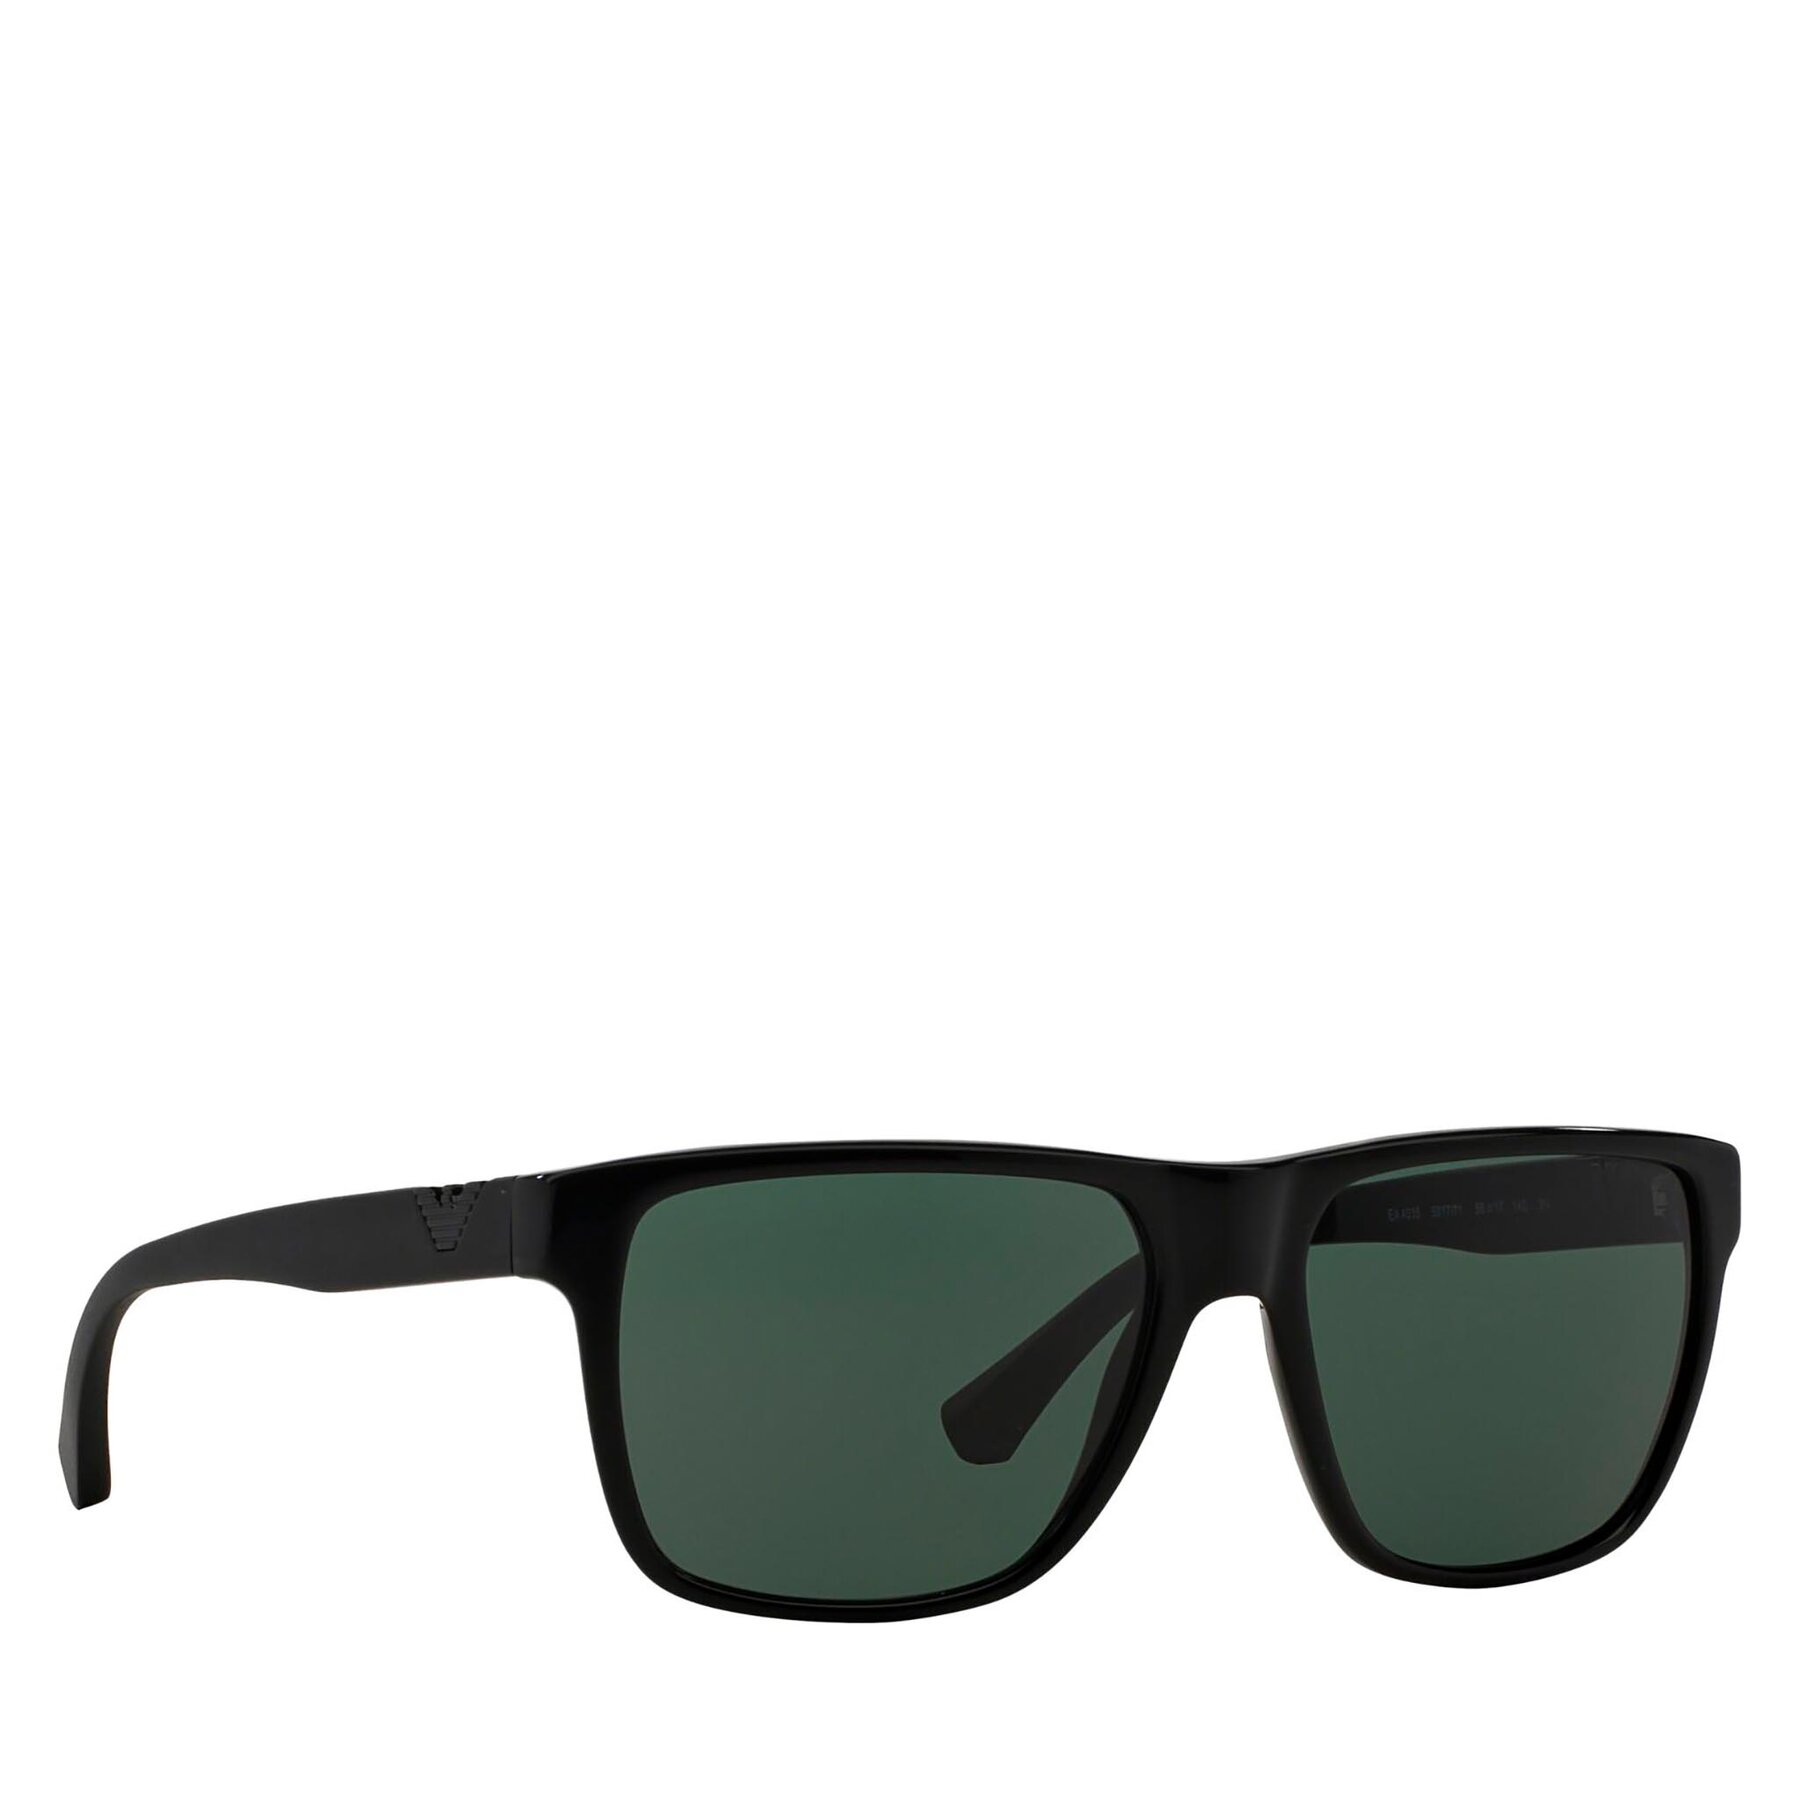 Sunčane naočale Emporio Armani 0EA4035 501771 Shiny Black/Green